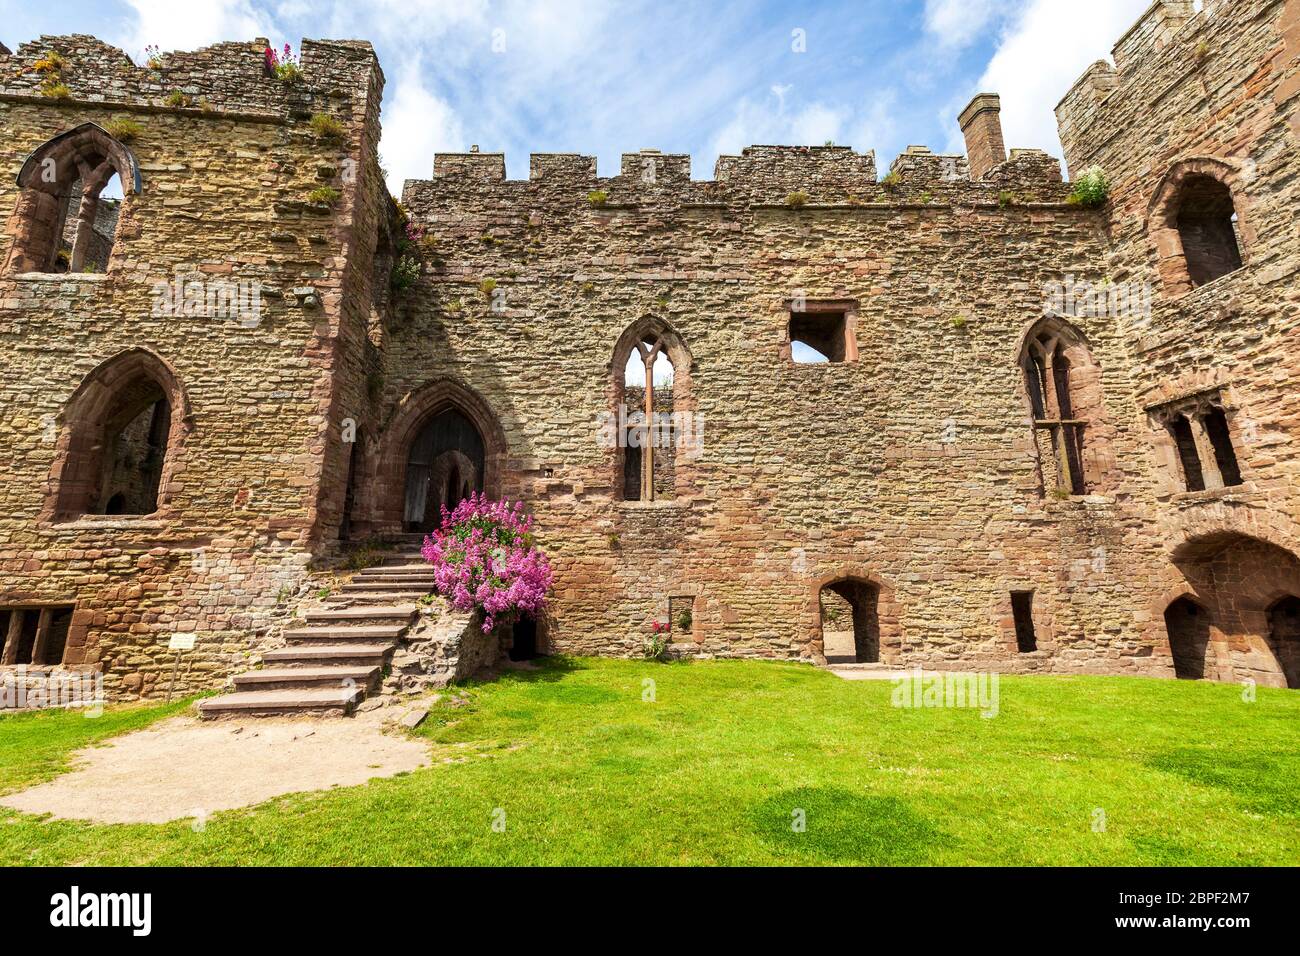 Le bloc solaire du XIIIe siècle et la Grande salle du château de Ludlow, Shropshire, Angleterre Banque D'Images